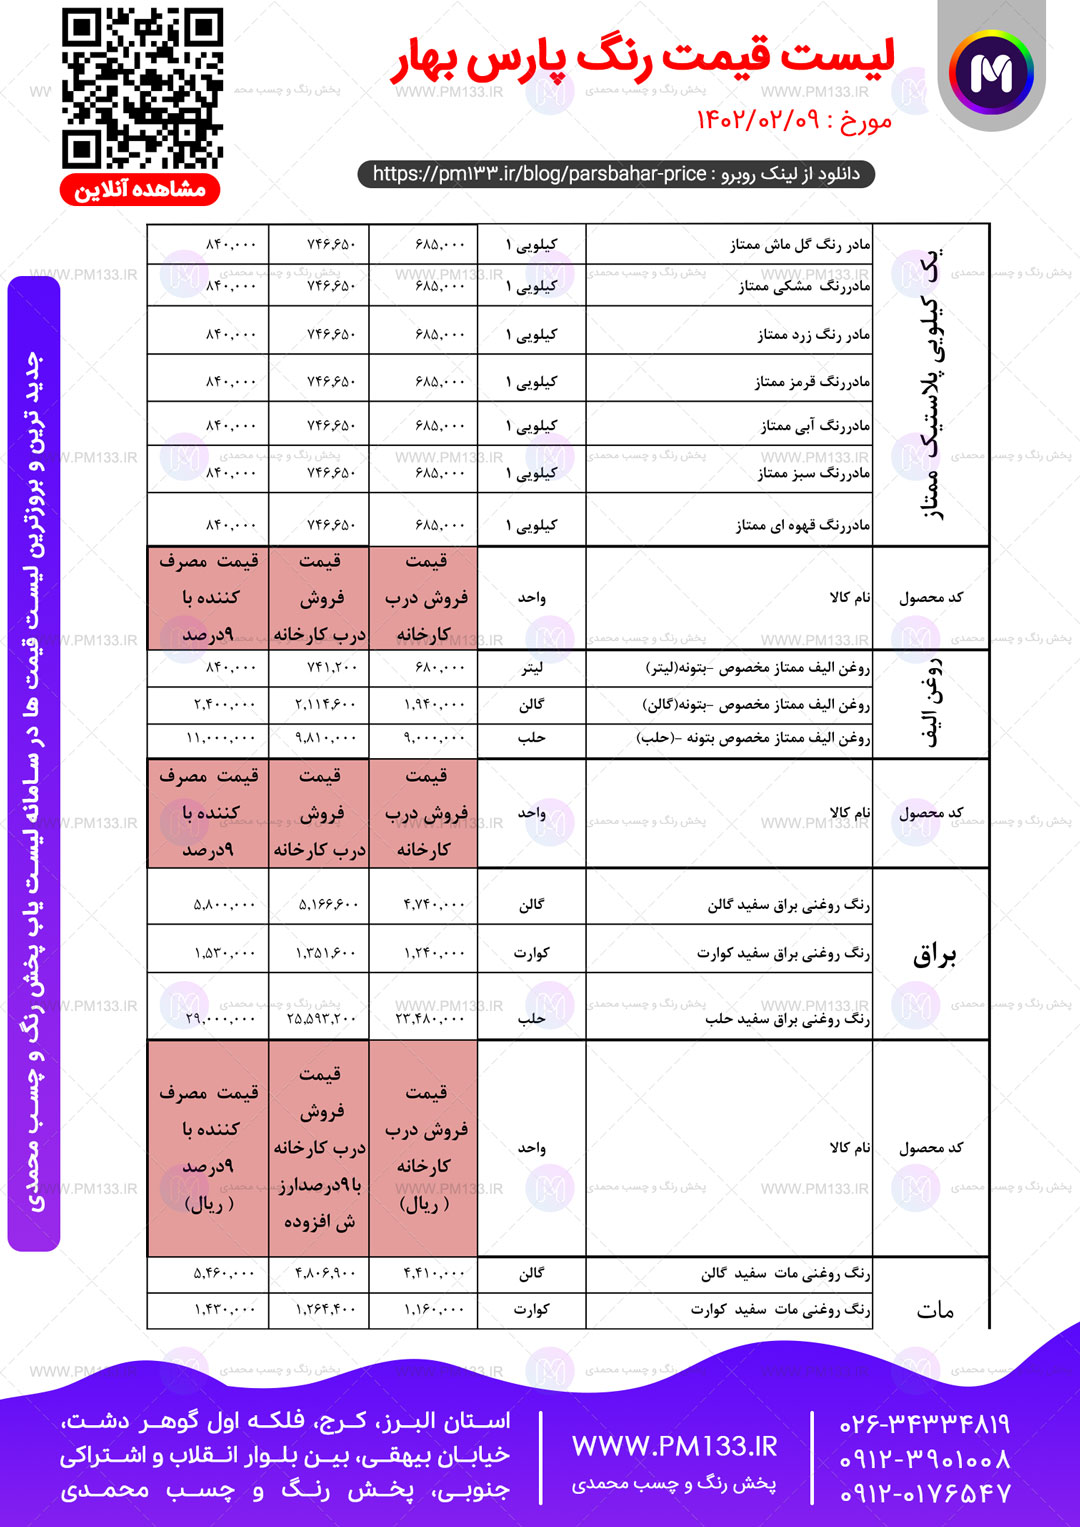 لیست قیمت پارس بهار مورخ 09-02-1402 صفحه2